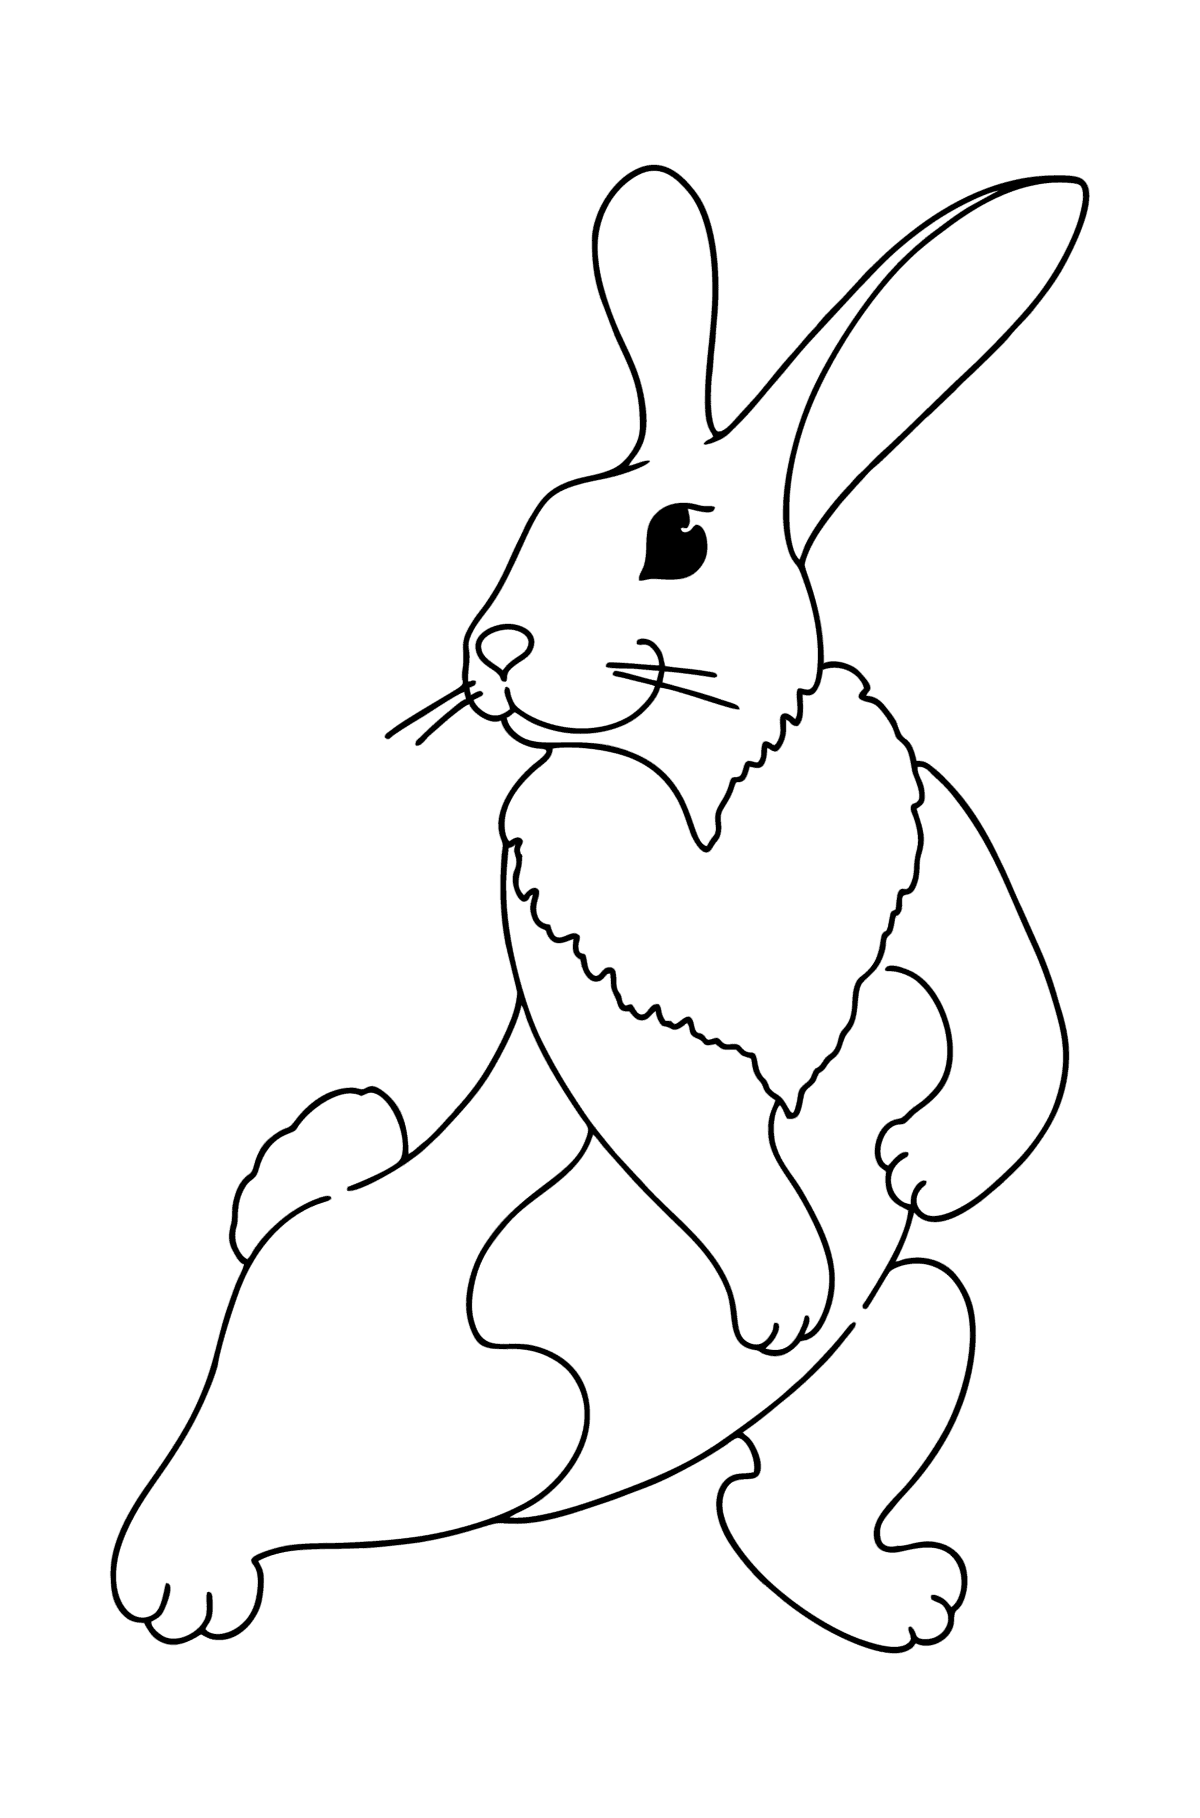 Desenho para colorir do coelhinho brincalhão - Imagens para Colorir para Crianças